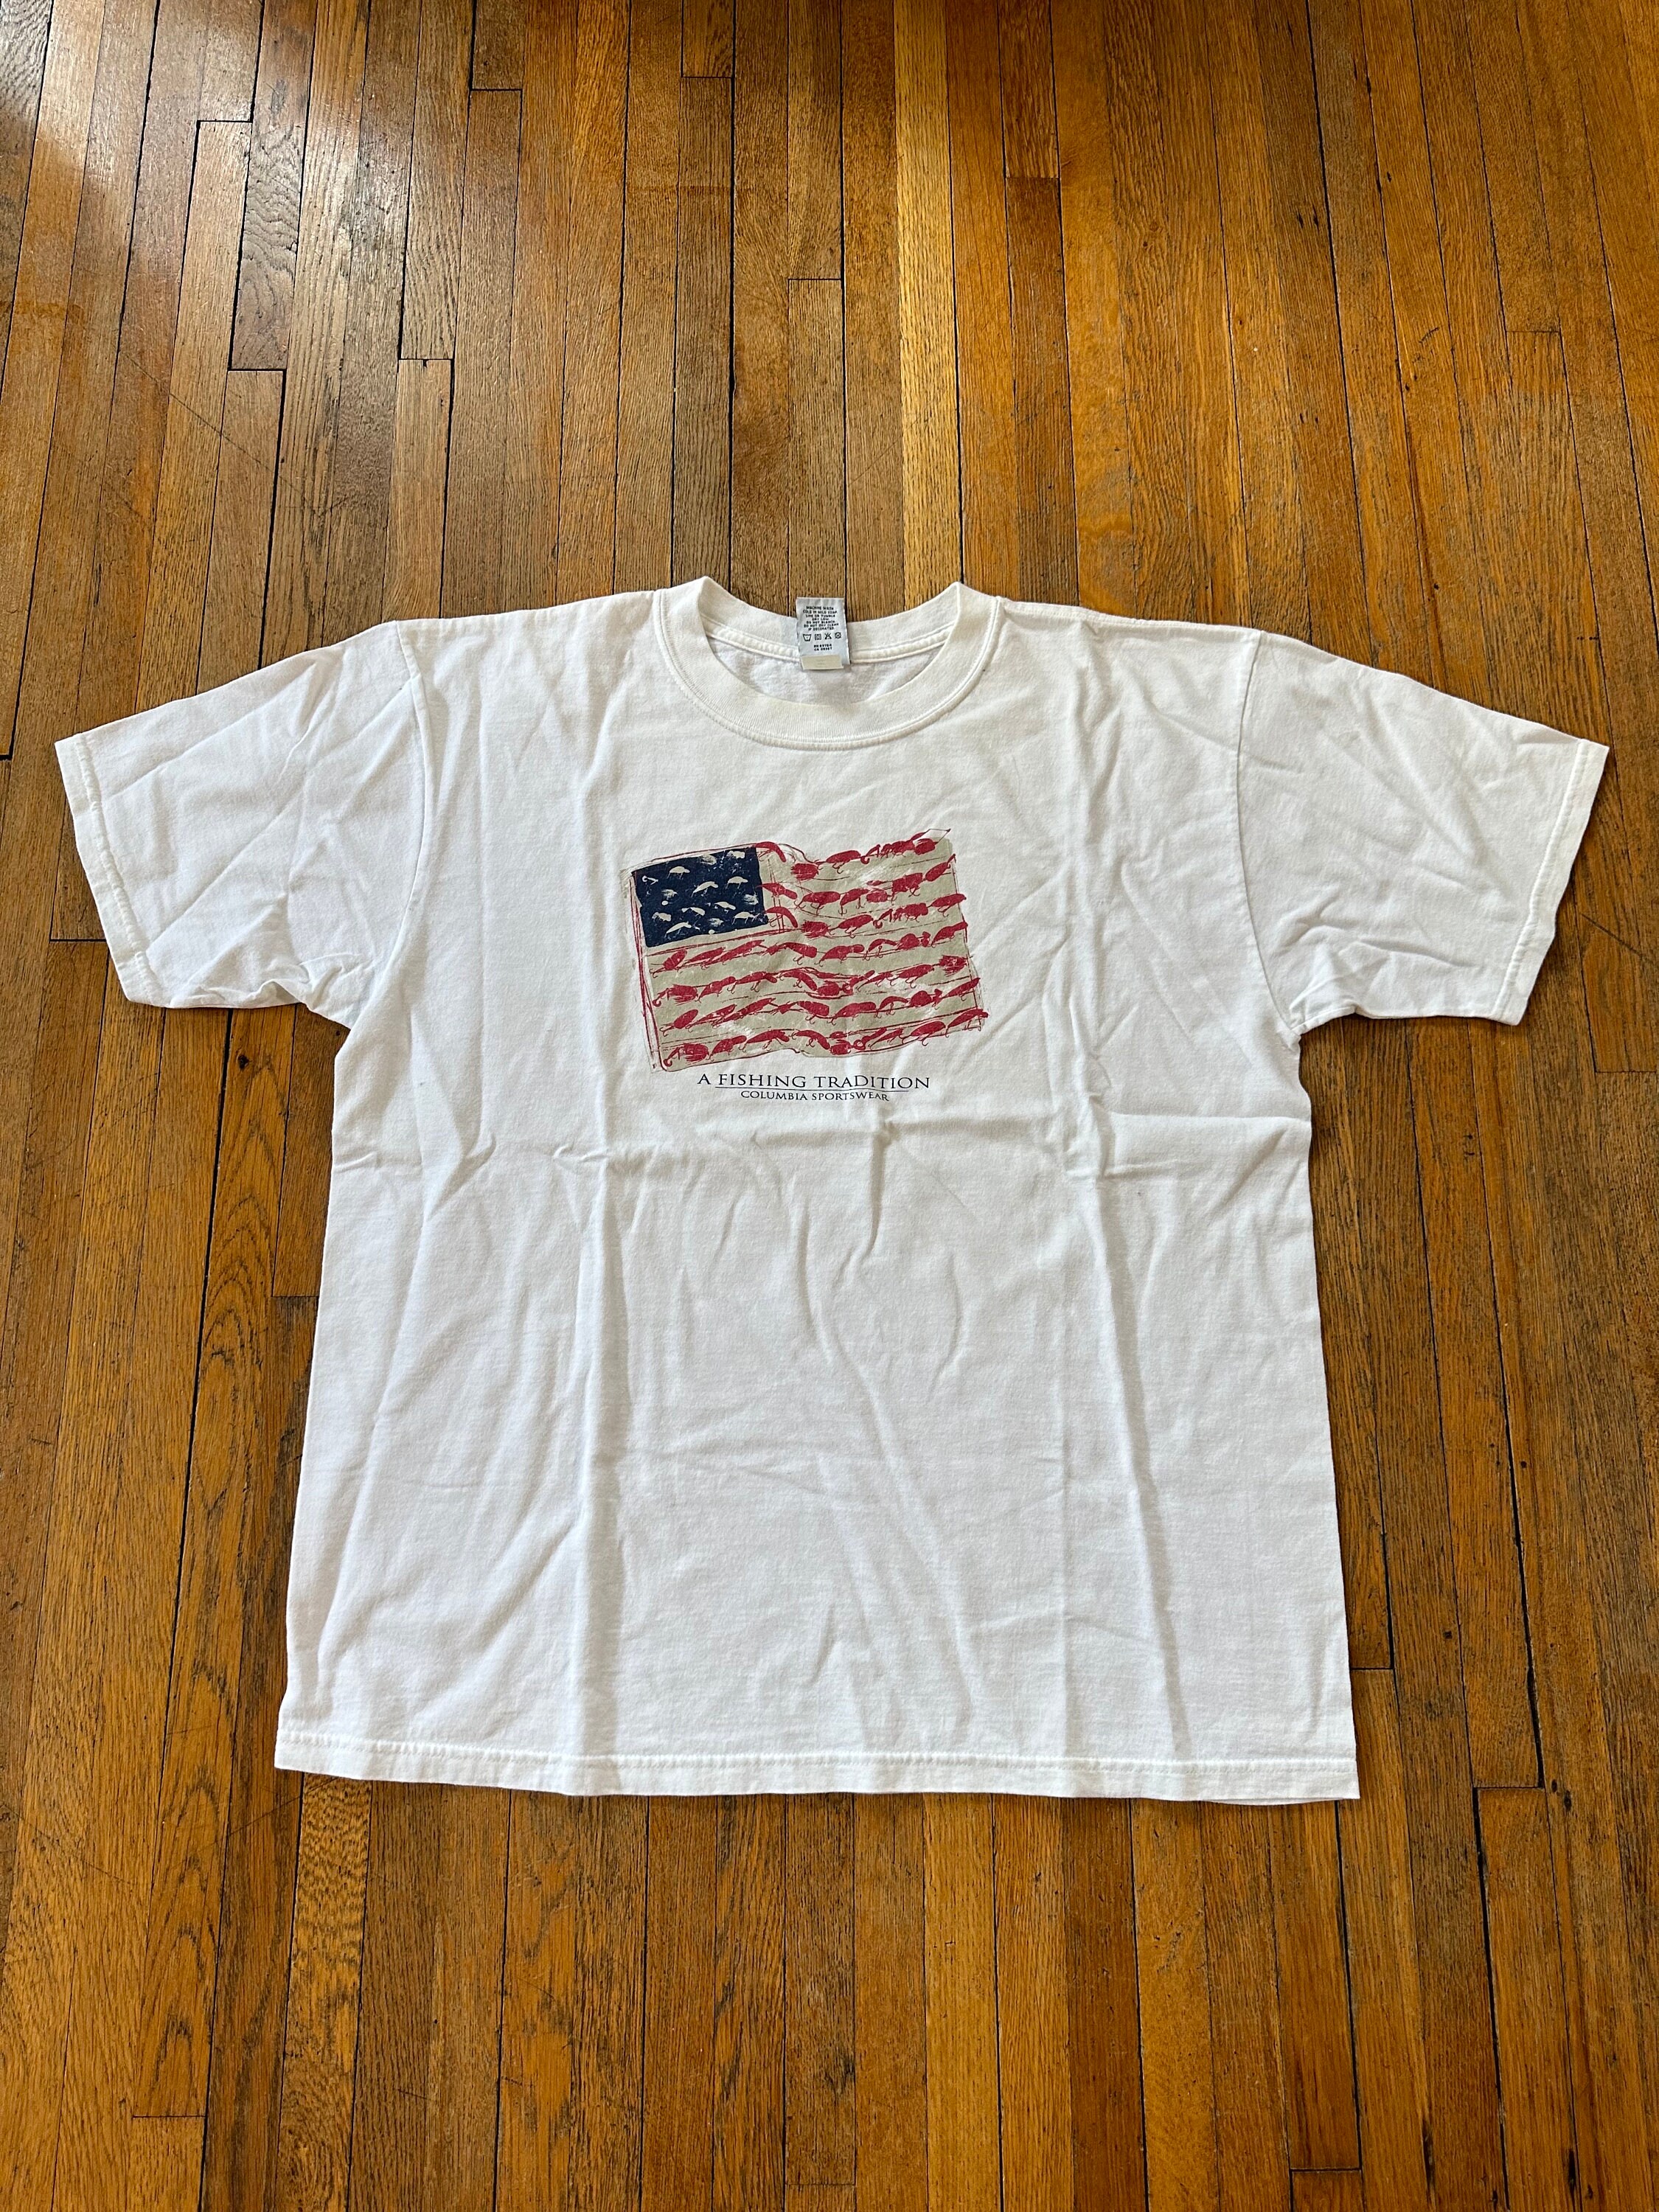 XL 90's Columbia Fishing Tshirt USA American Flag -  UK